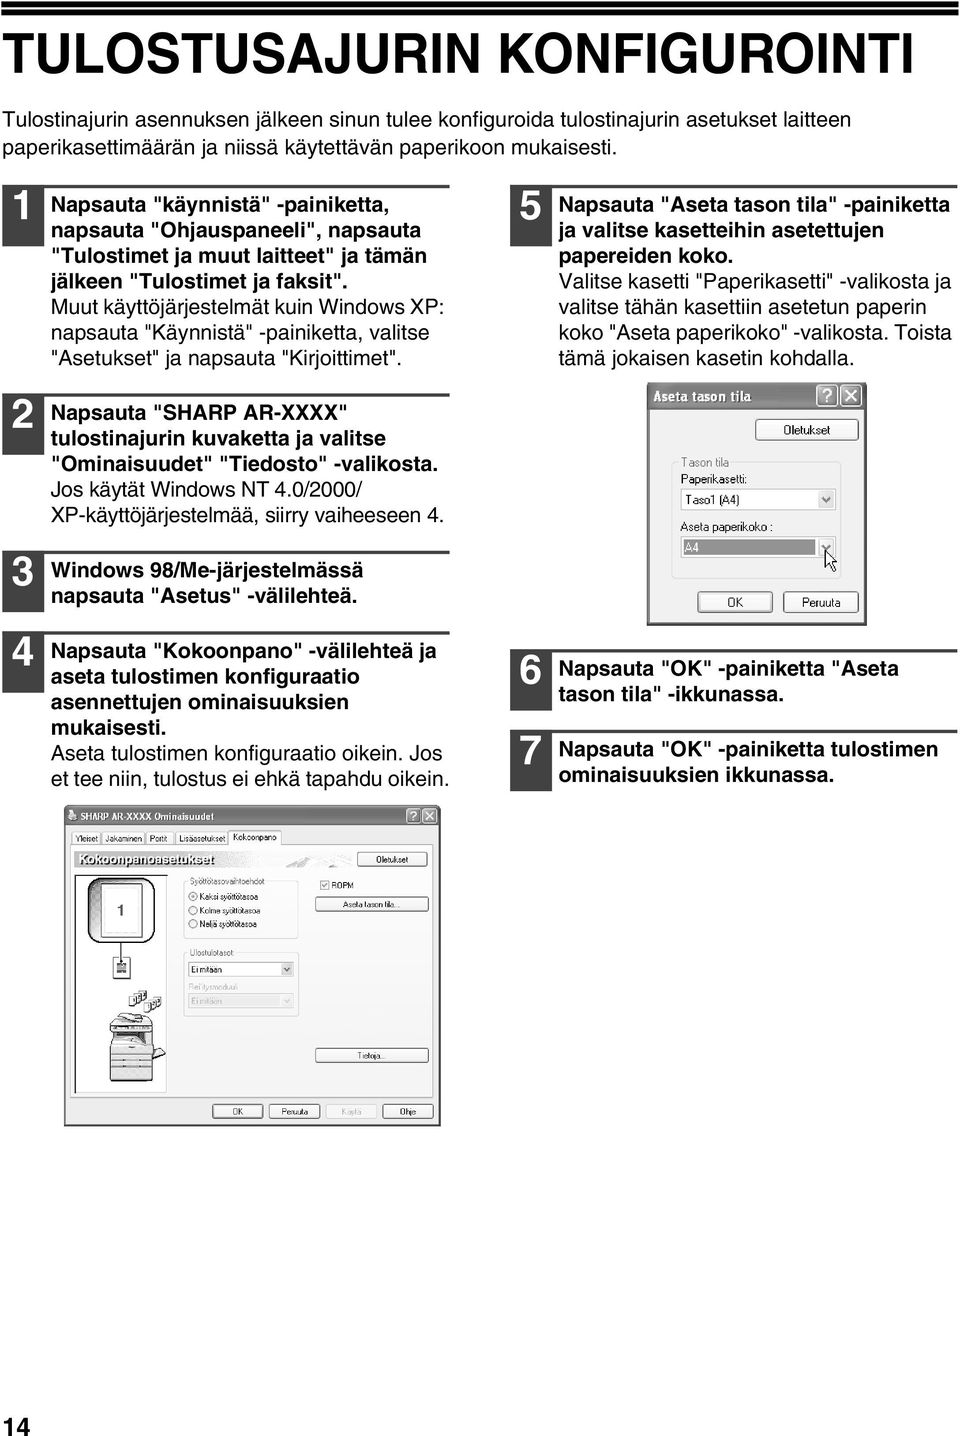 Muut käyttöjärjestelmät kuin Windows XP: napsauta "Käynnistä" -painiketta, valitse "Asetukset" ja napsauta "Kirjoittimet".